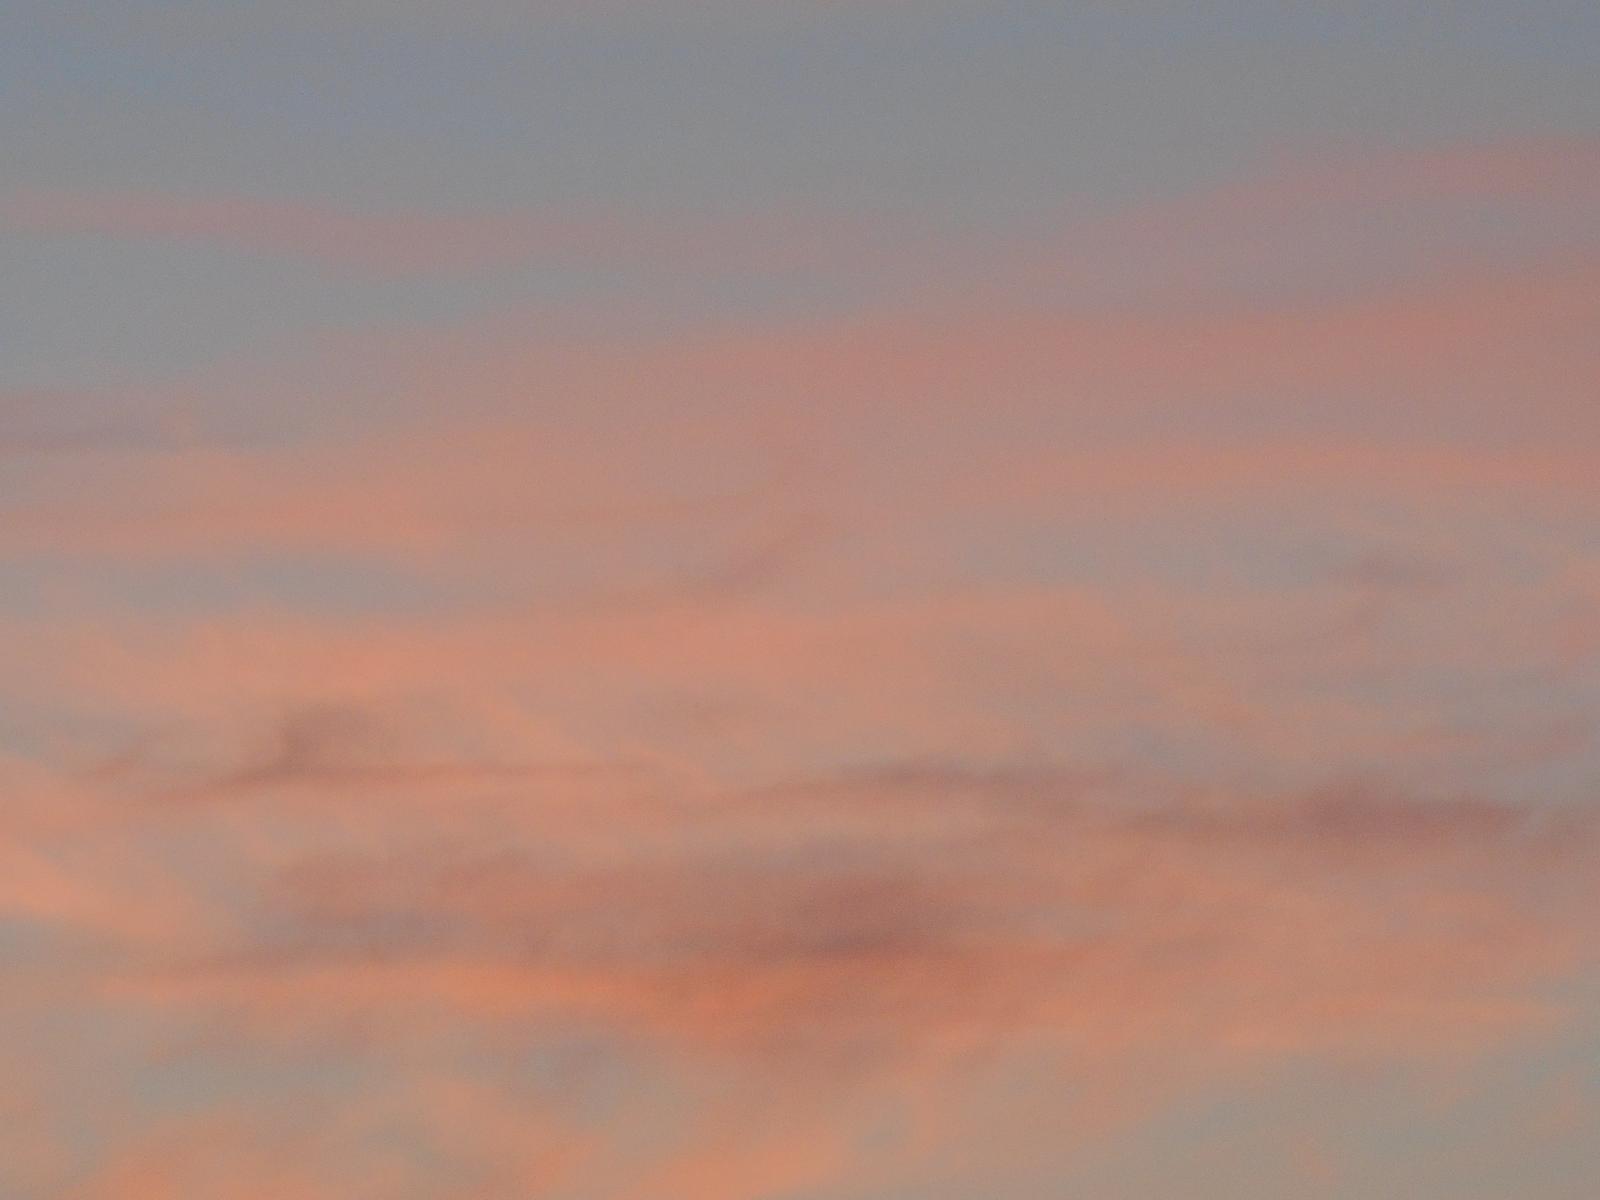 De la craie rose-orange dans le ciel ( Les Moutiers en Retz )